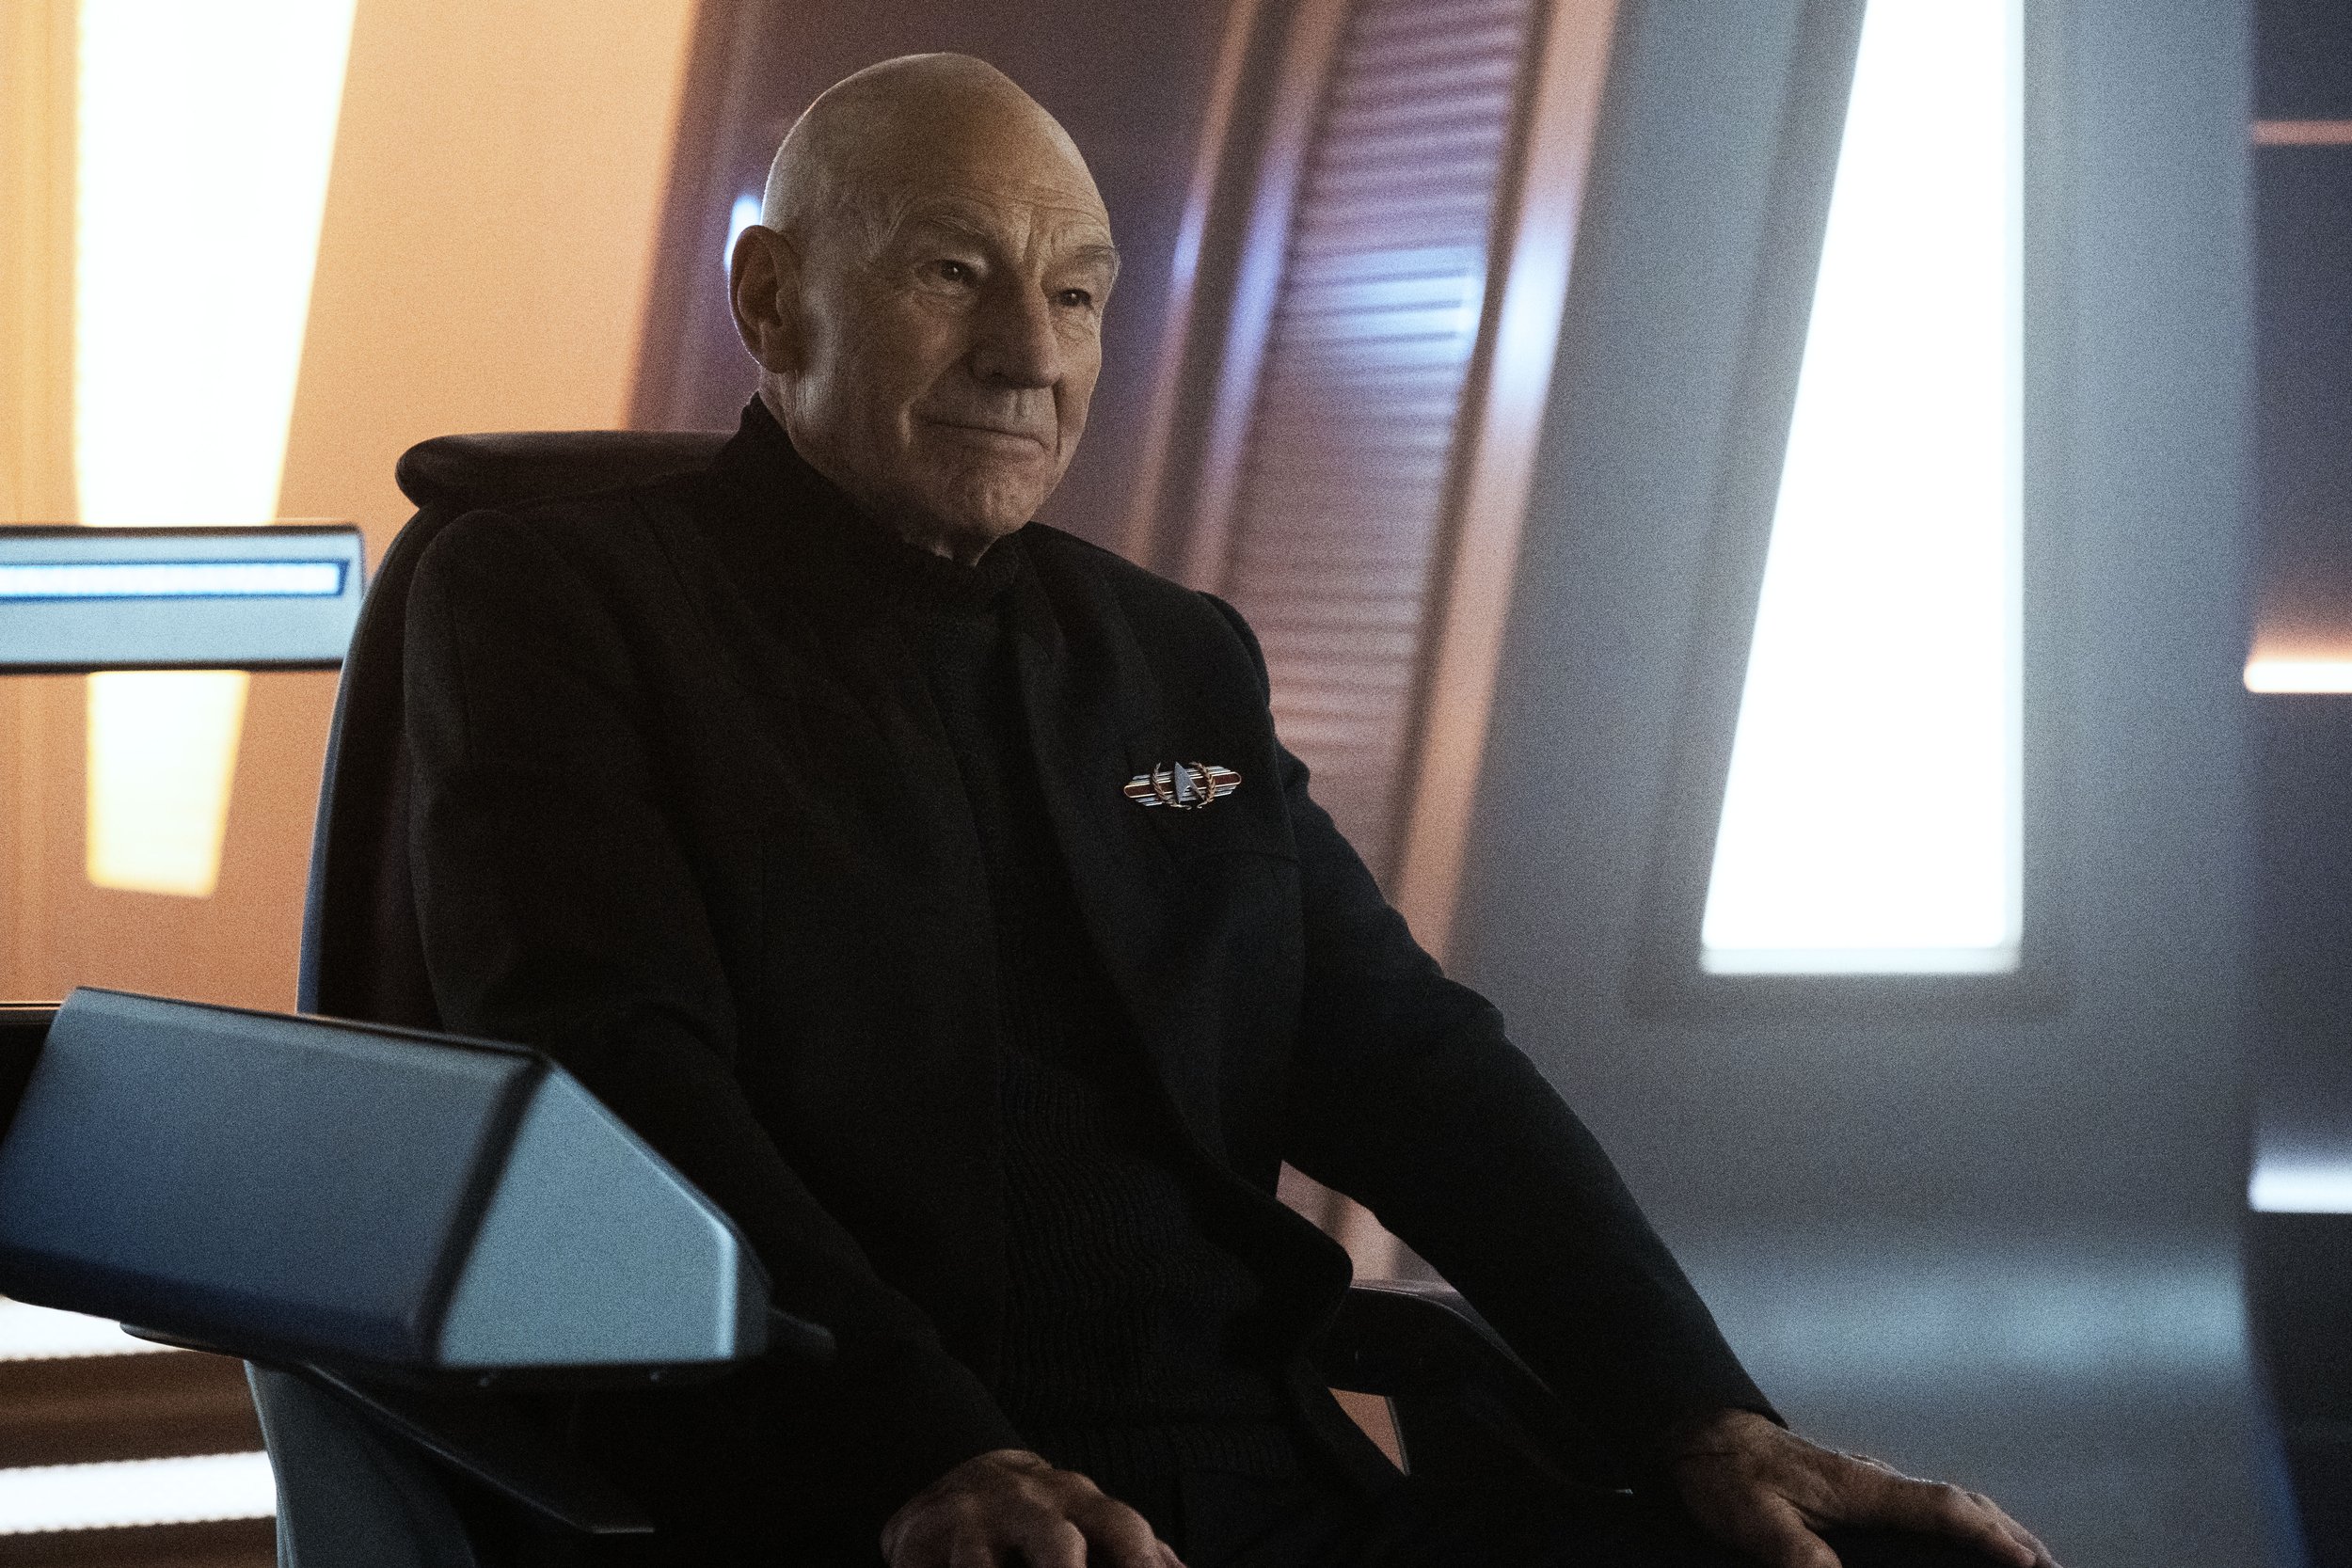   Patrick Stewart  as Picard.  Image: Trae Patton/Paramount+.  